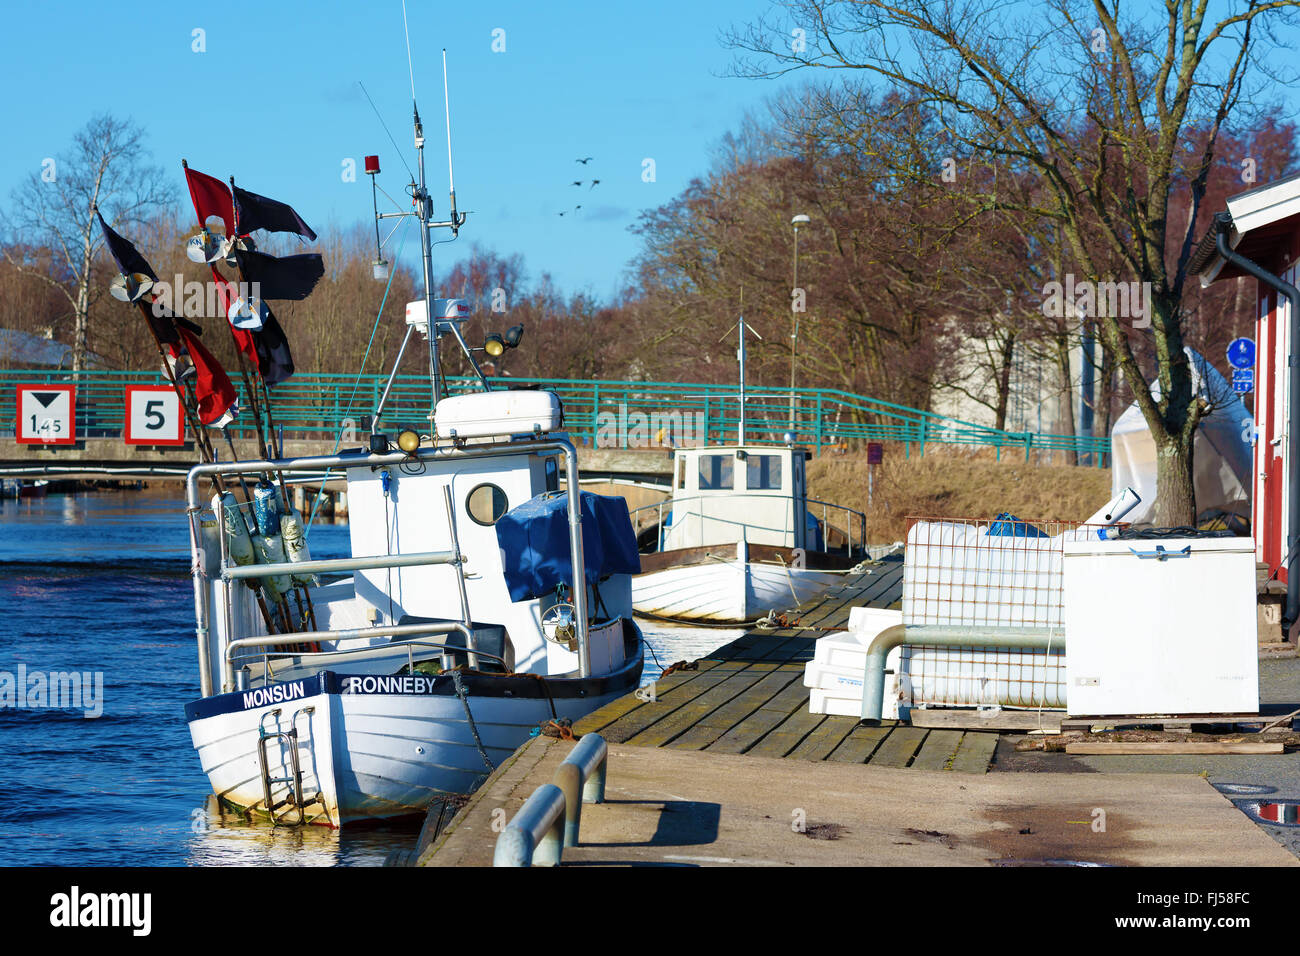 Ronneby, Svezia - 26 Febbraio 2016: piccole barche da pesca ormeggiate nel porto. Il fiume Ronnebyan flusso delicatamente accanto alle barche. Foto Stock